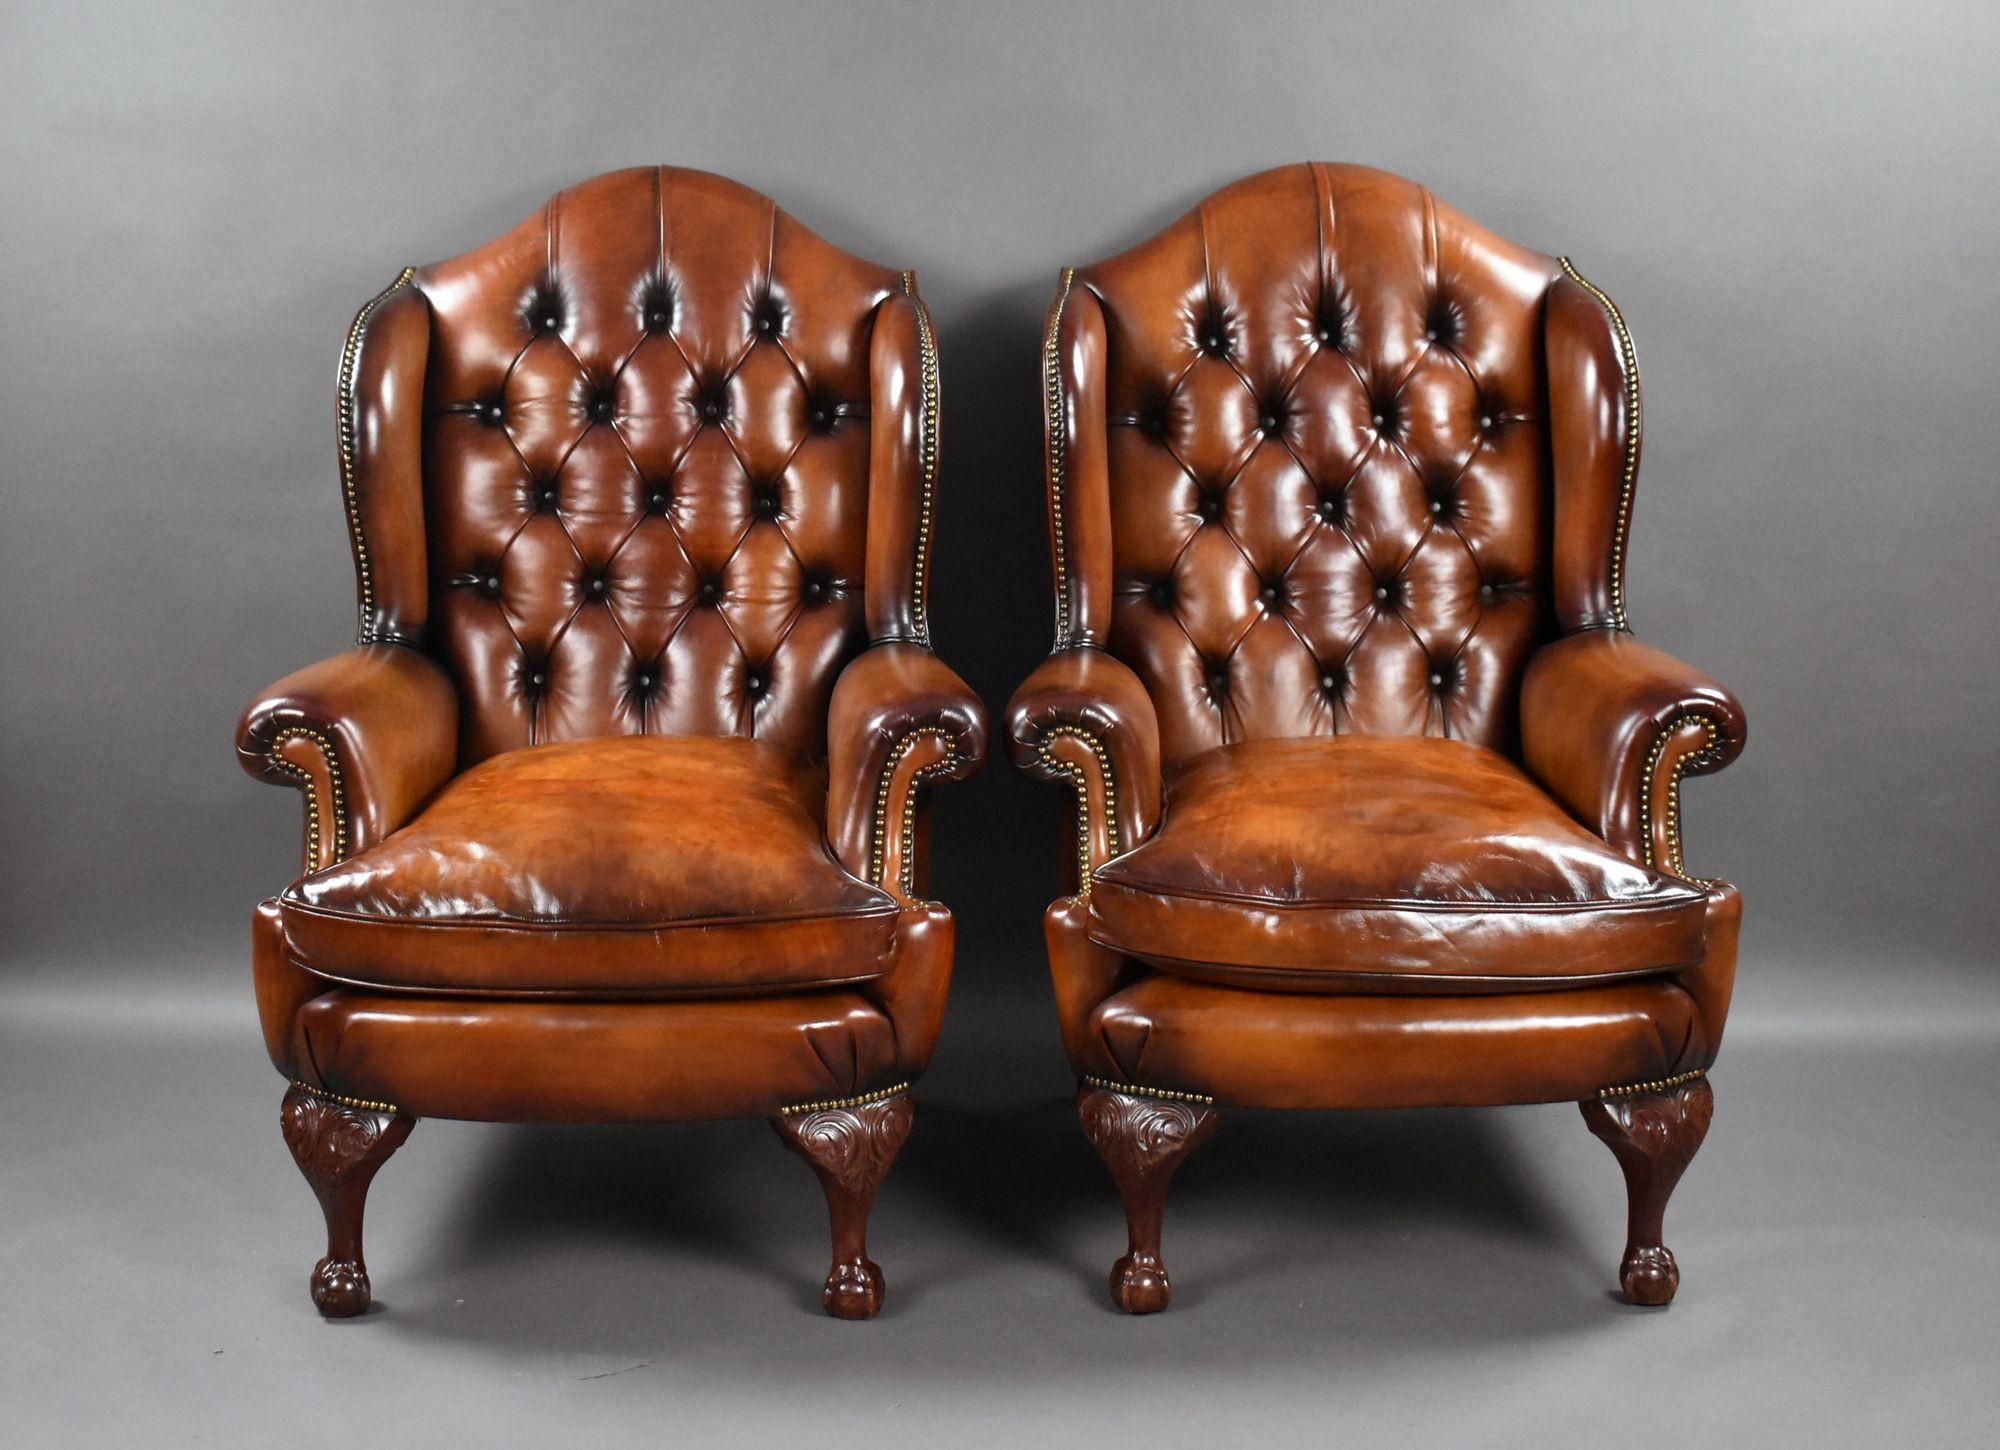 Il s'agit d'une paire de fauteuils à oreilles en cuir de très bonne qualité, avec des dossiers en forme et profondément boutonnés, au-dessus d'un coussin rembourré de plumes, reposant sur d'élégants pieds griffes et boules sculptés. Chaque fauteuil